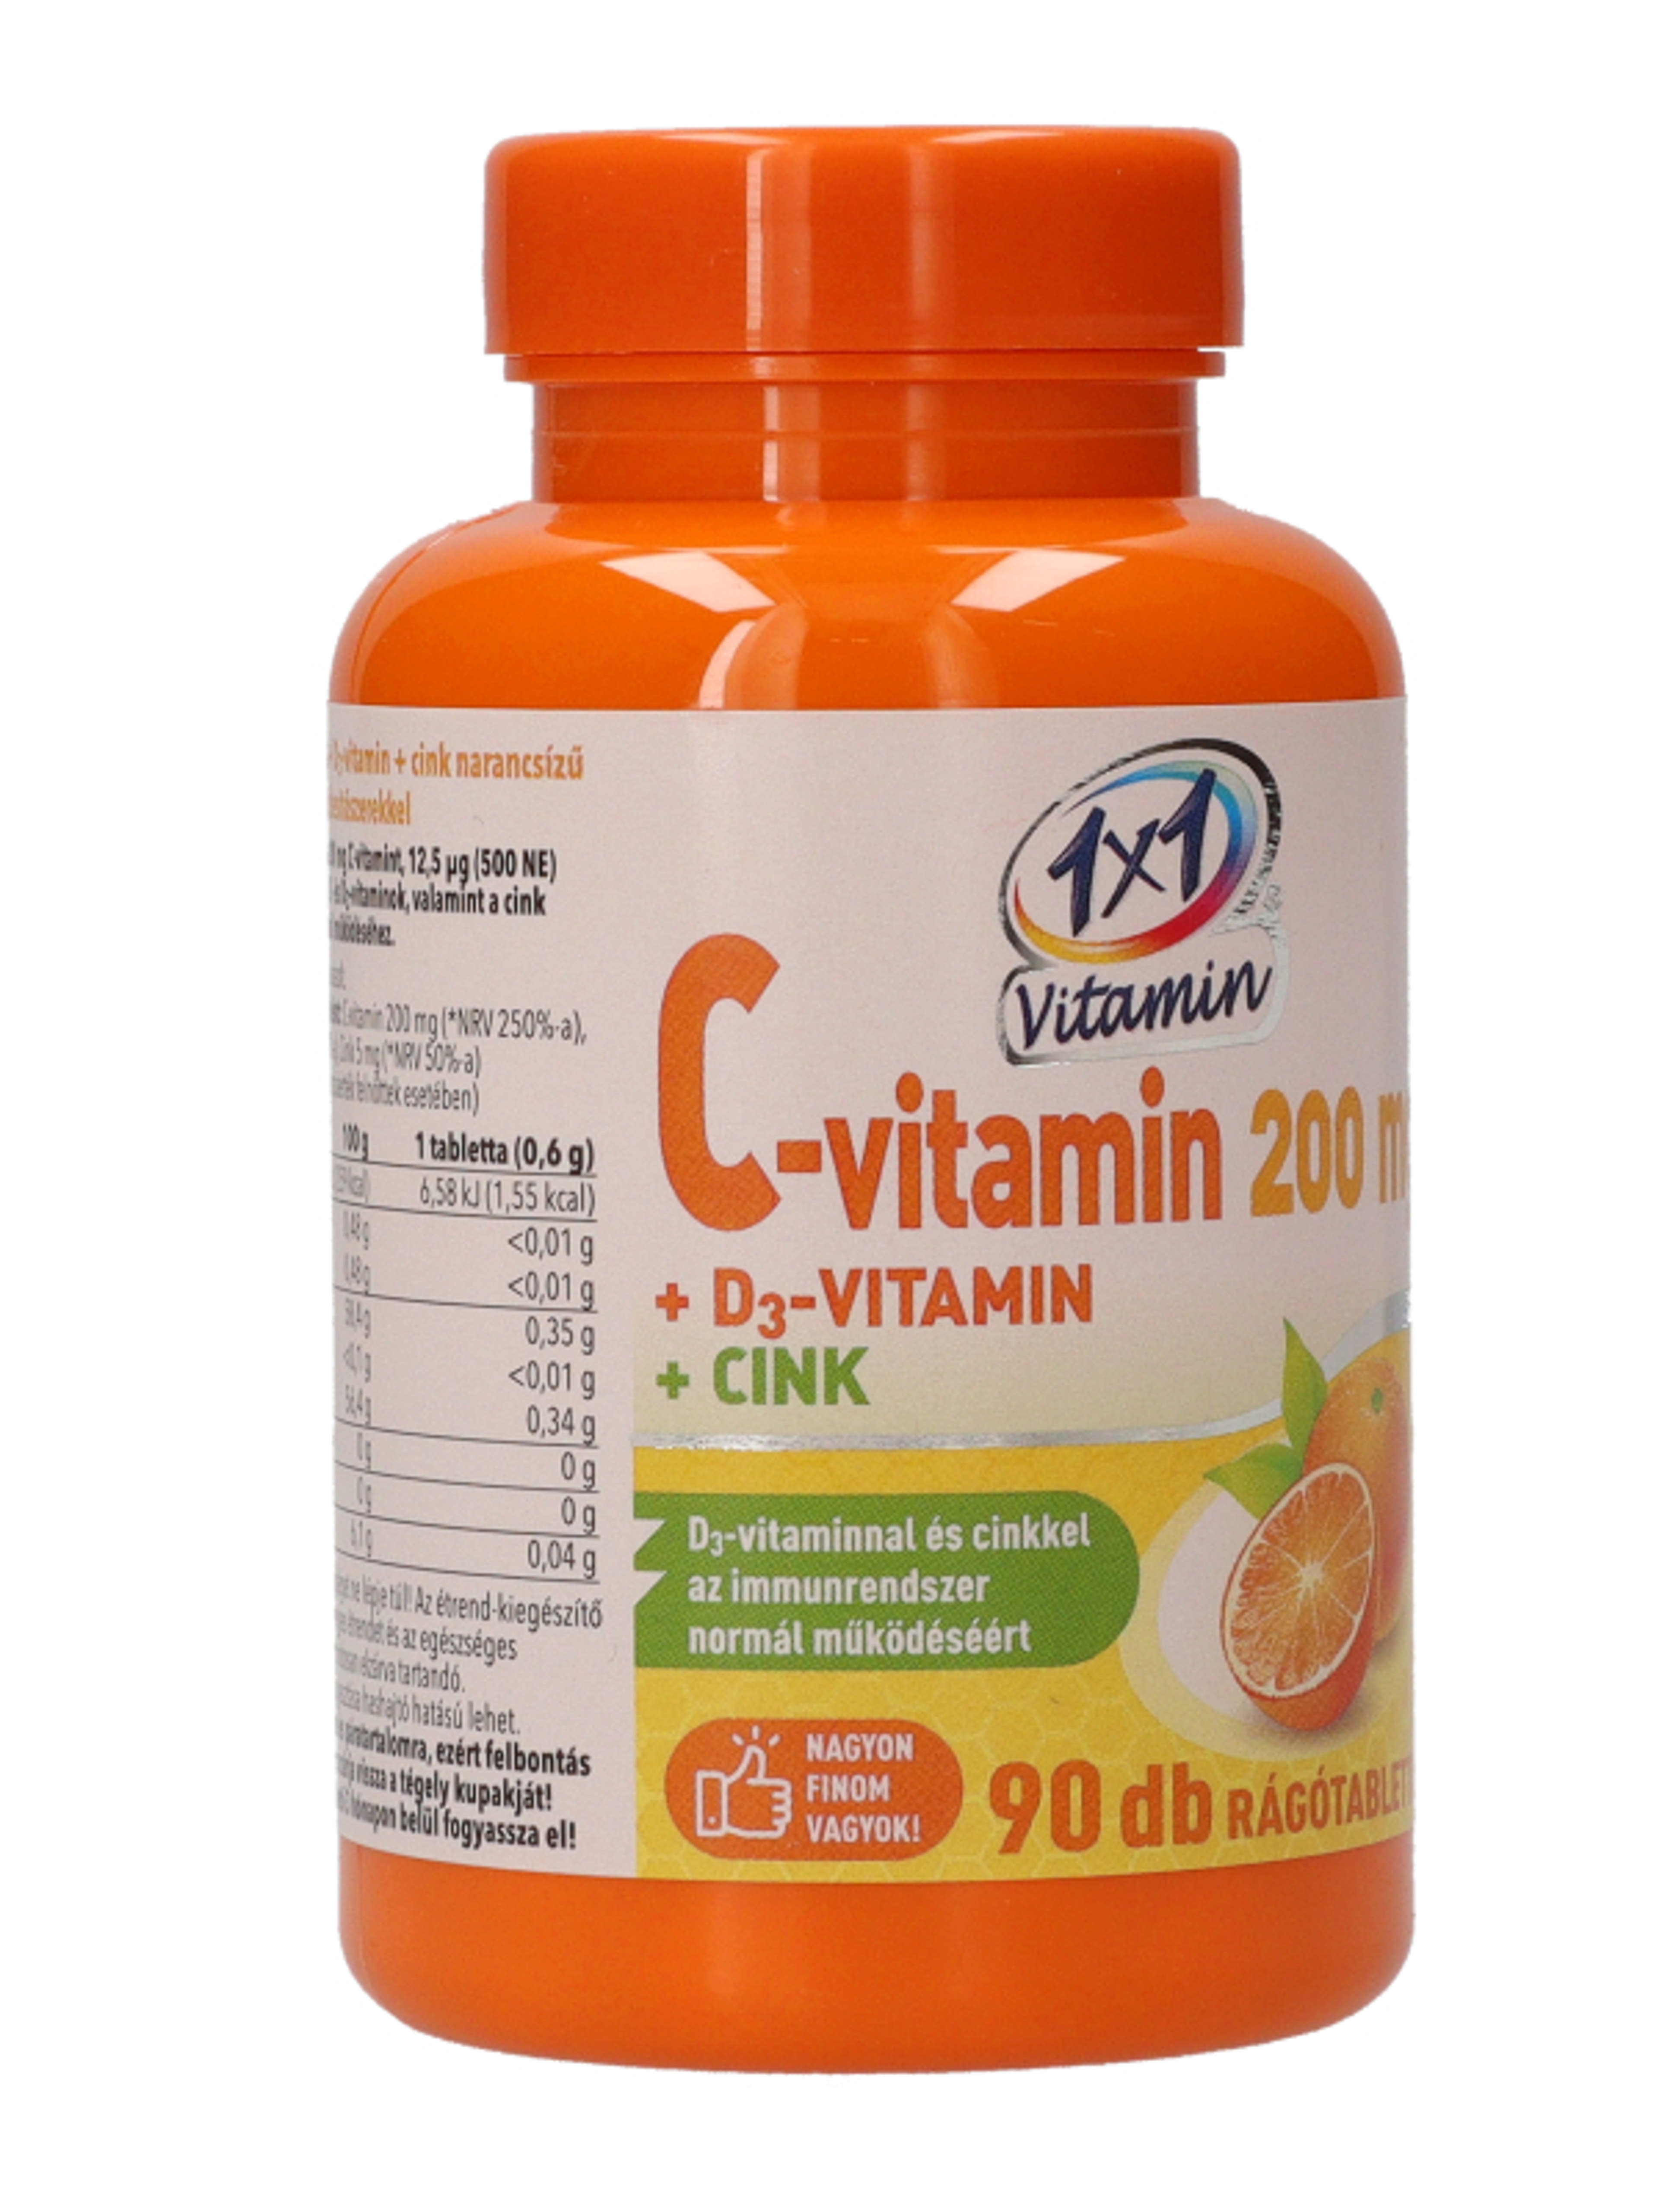 1x1 Vitaday C-vitamin 200 D3 Cink Rágótabletta - 90 db-4